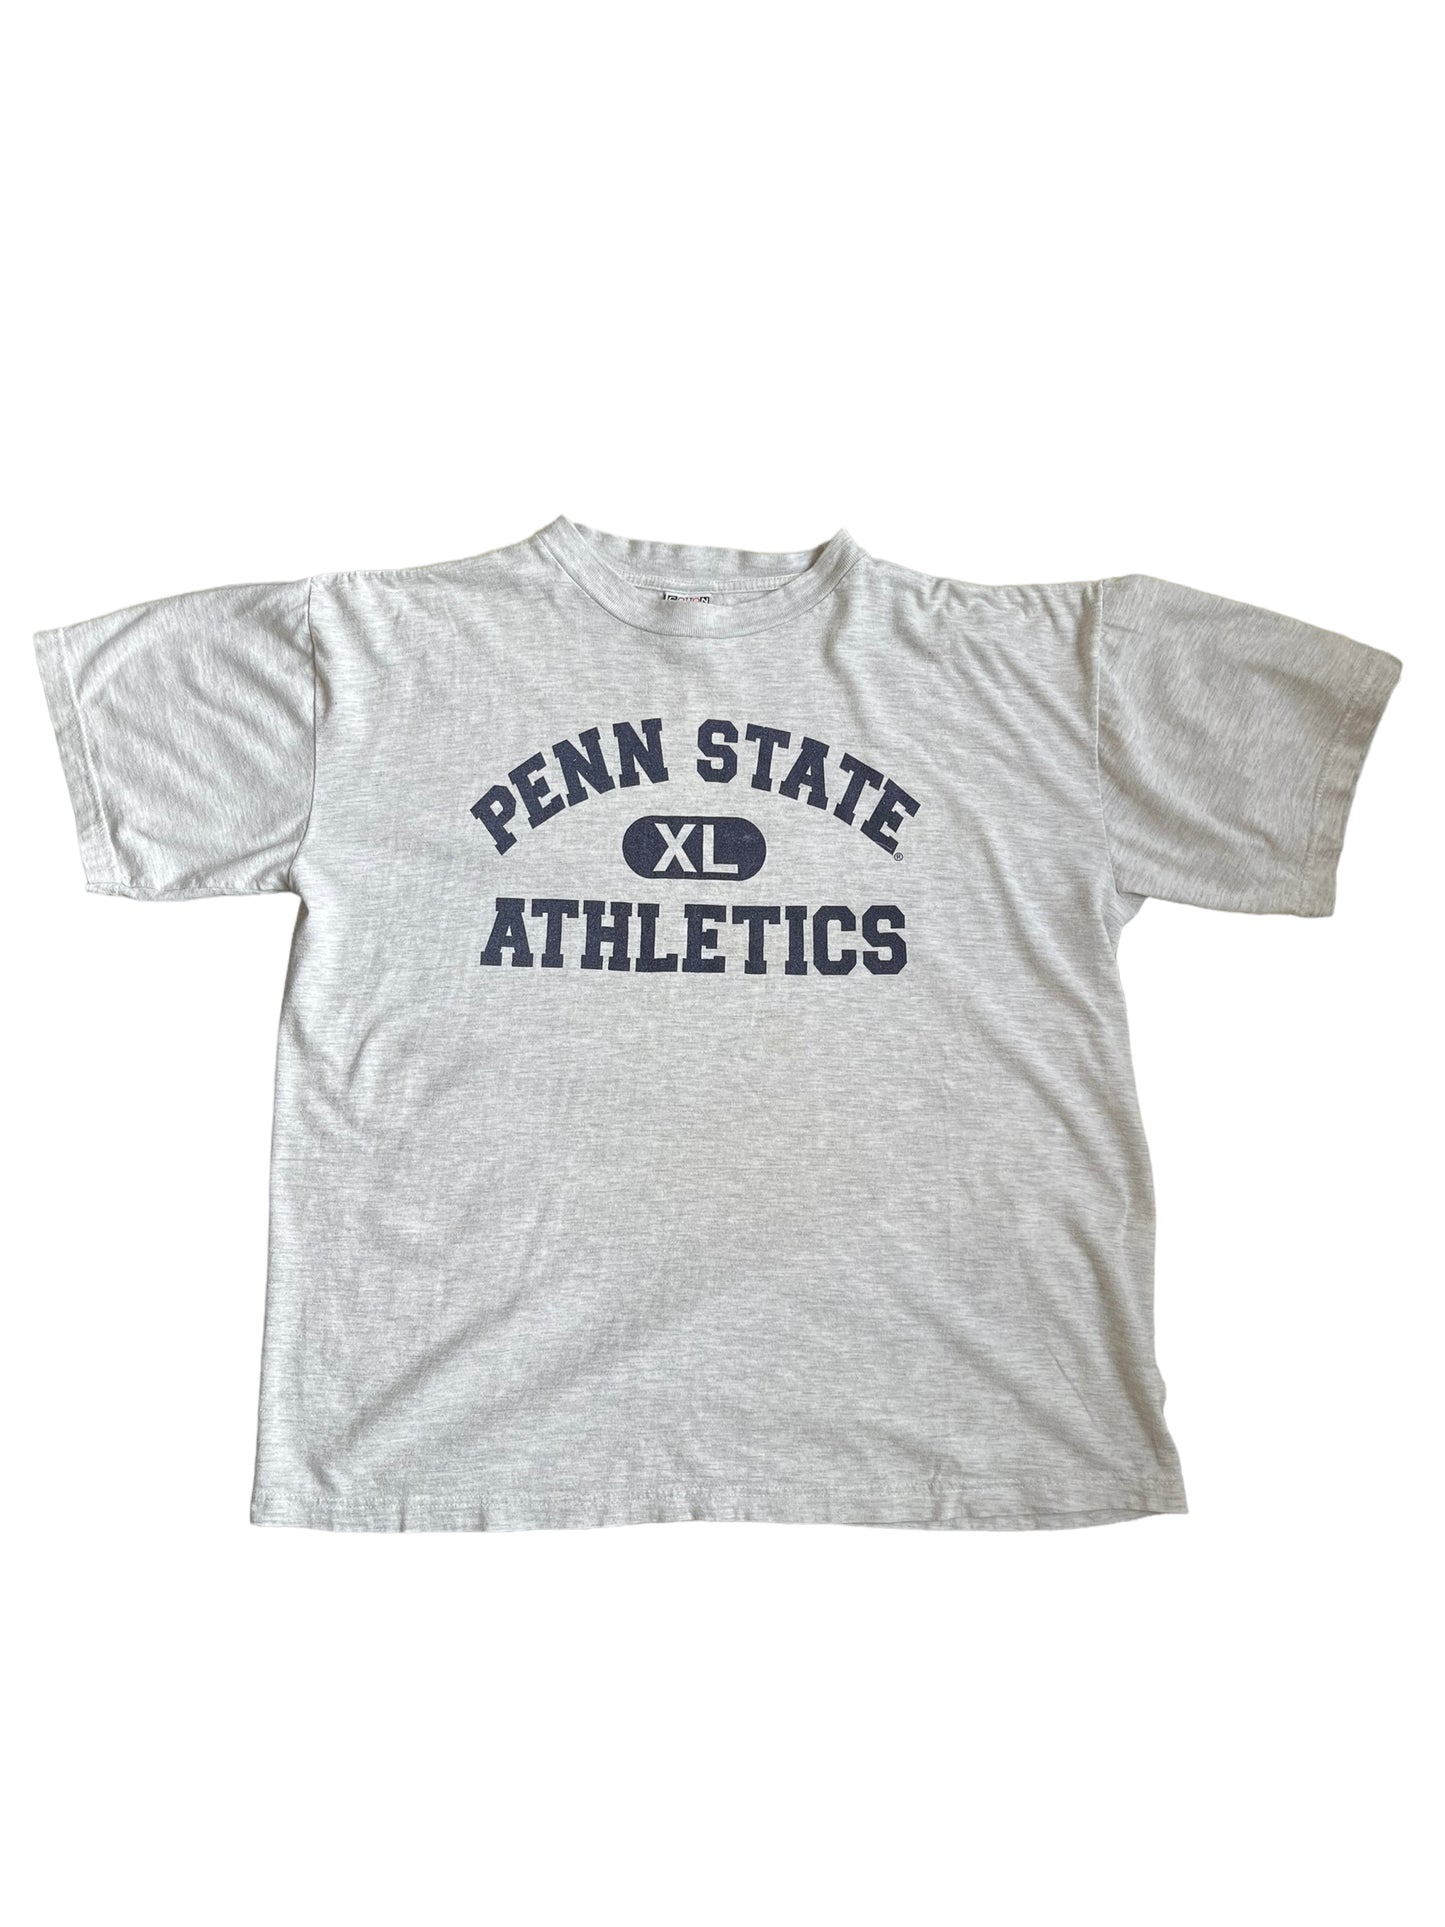 (XL) Vintage Penn State Athletics Tee